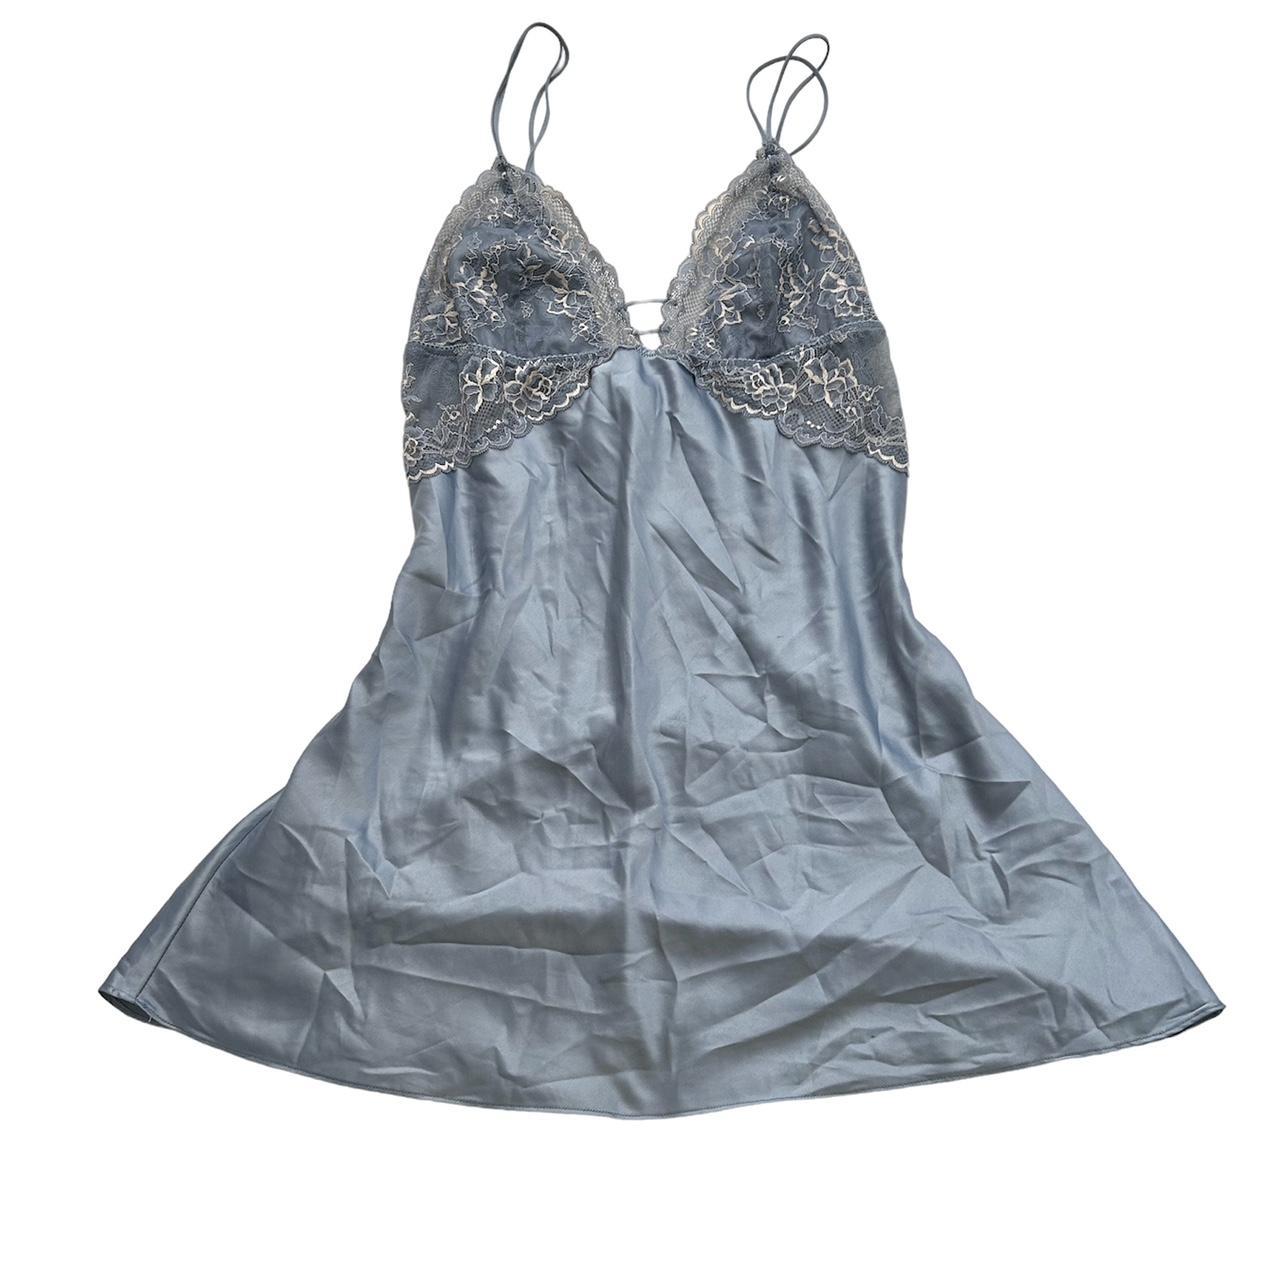 lacy blue lingerie dress super cute soft lacy... - Depop